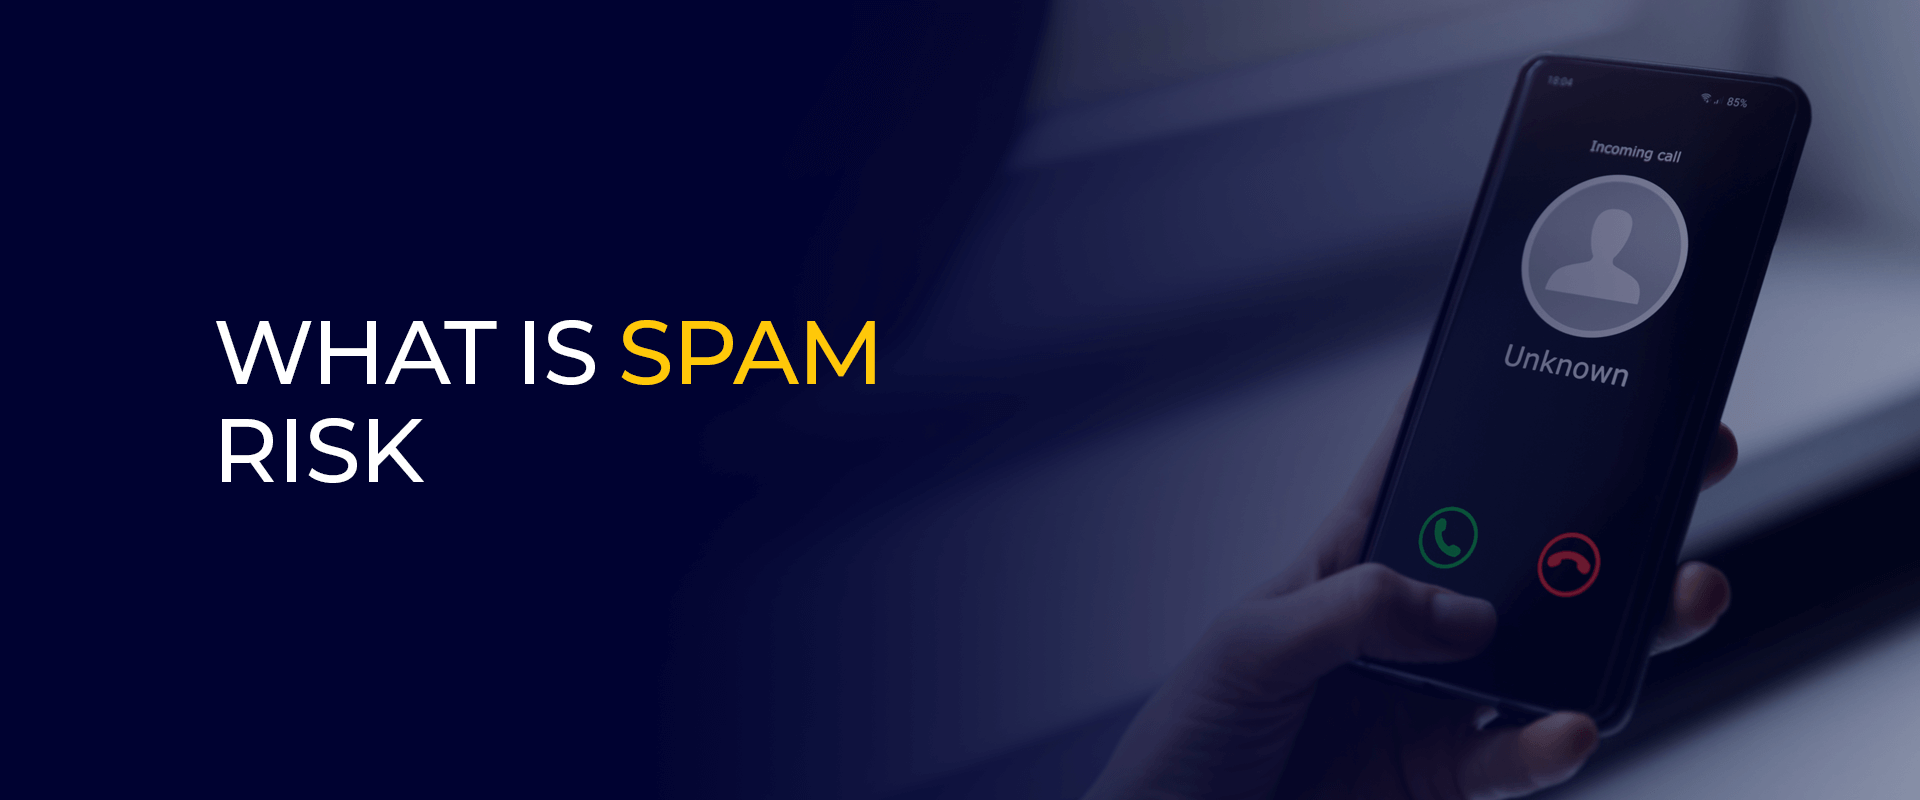 Cos'è il rischio spam